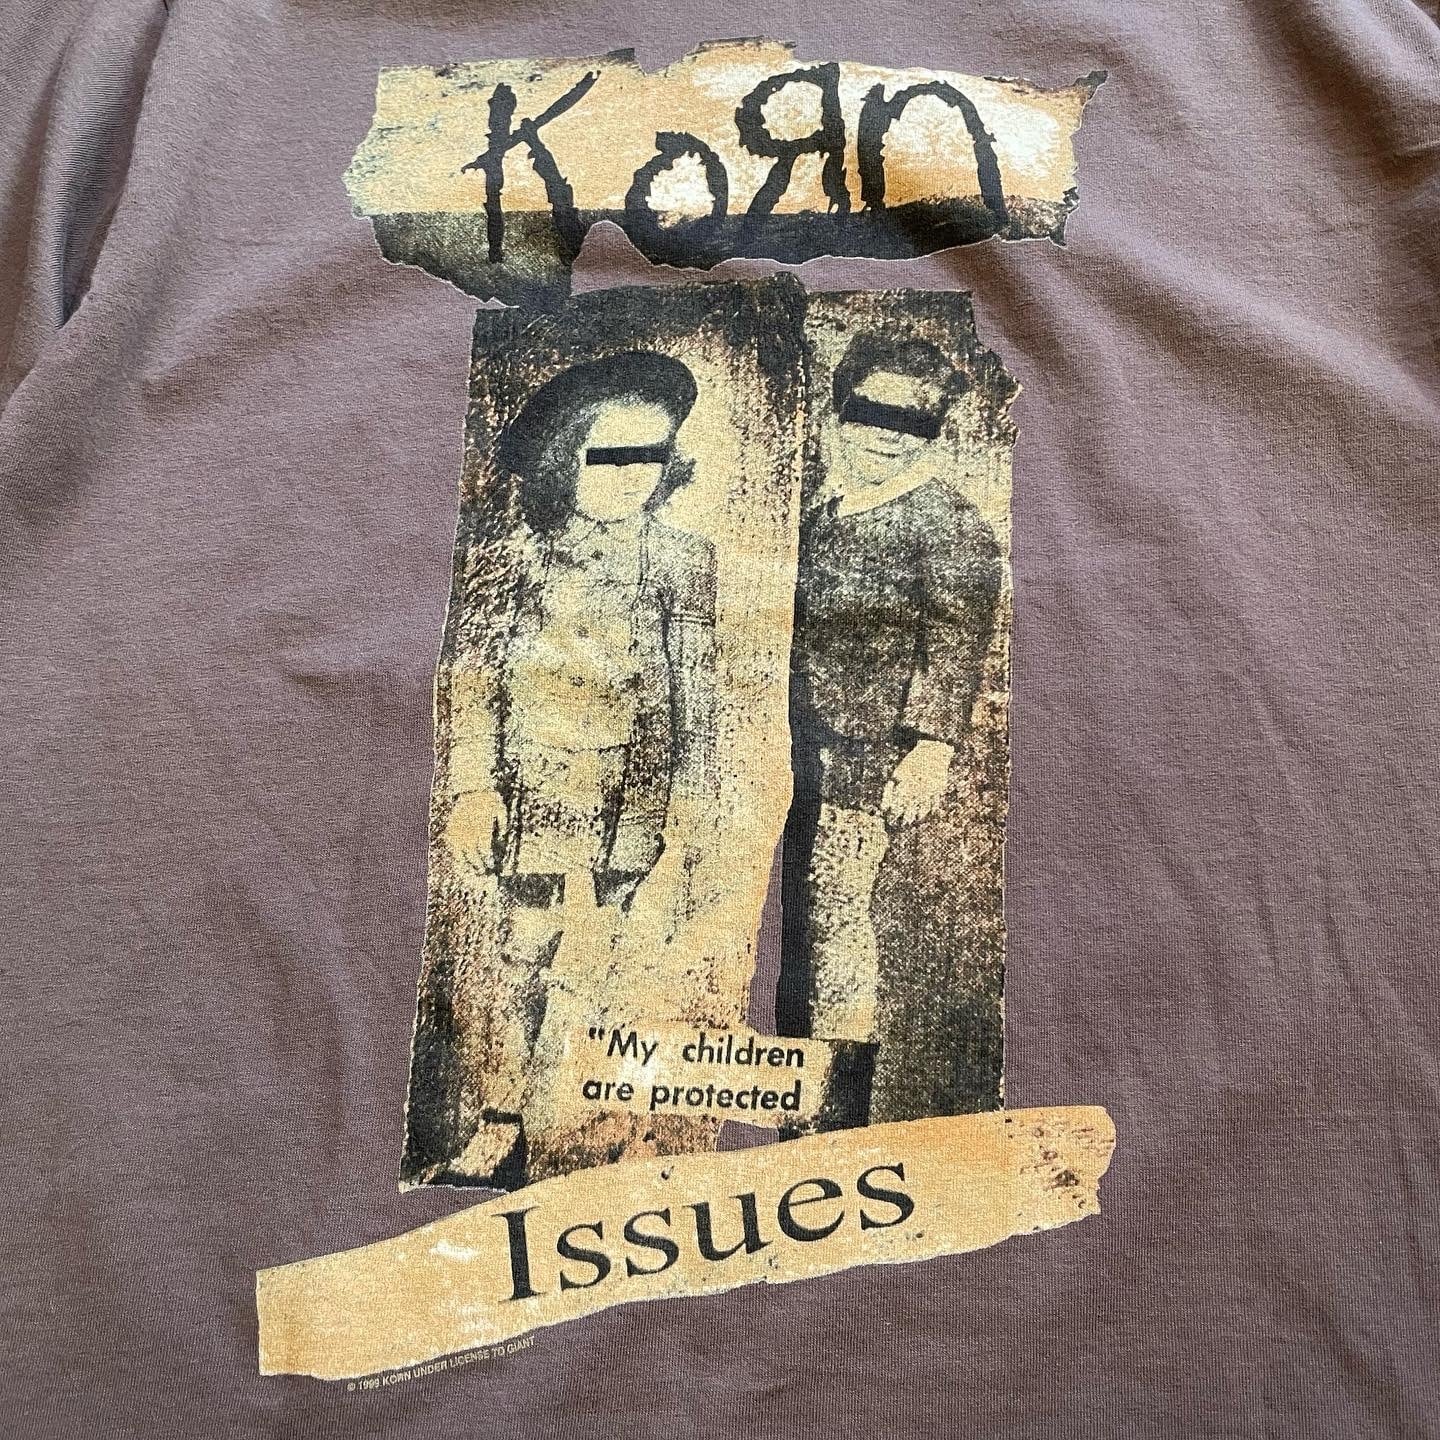 激レア 1999年製 コーン Korn ヴィンテージ Tシャツ issues